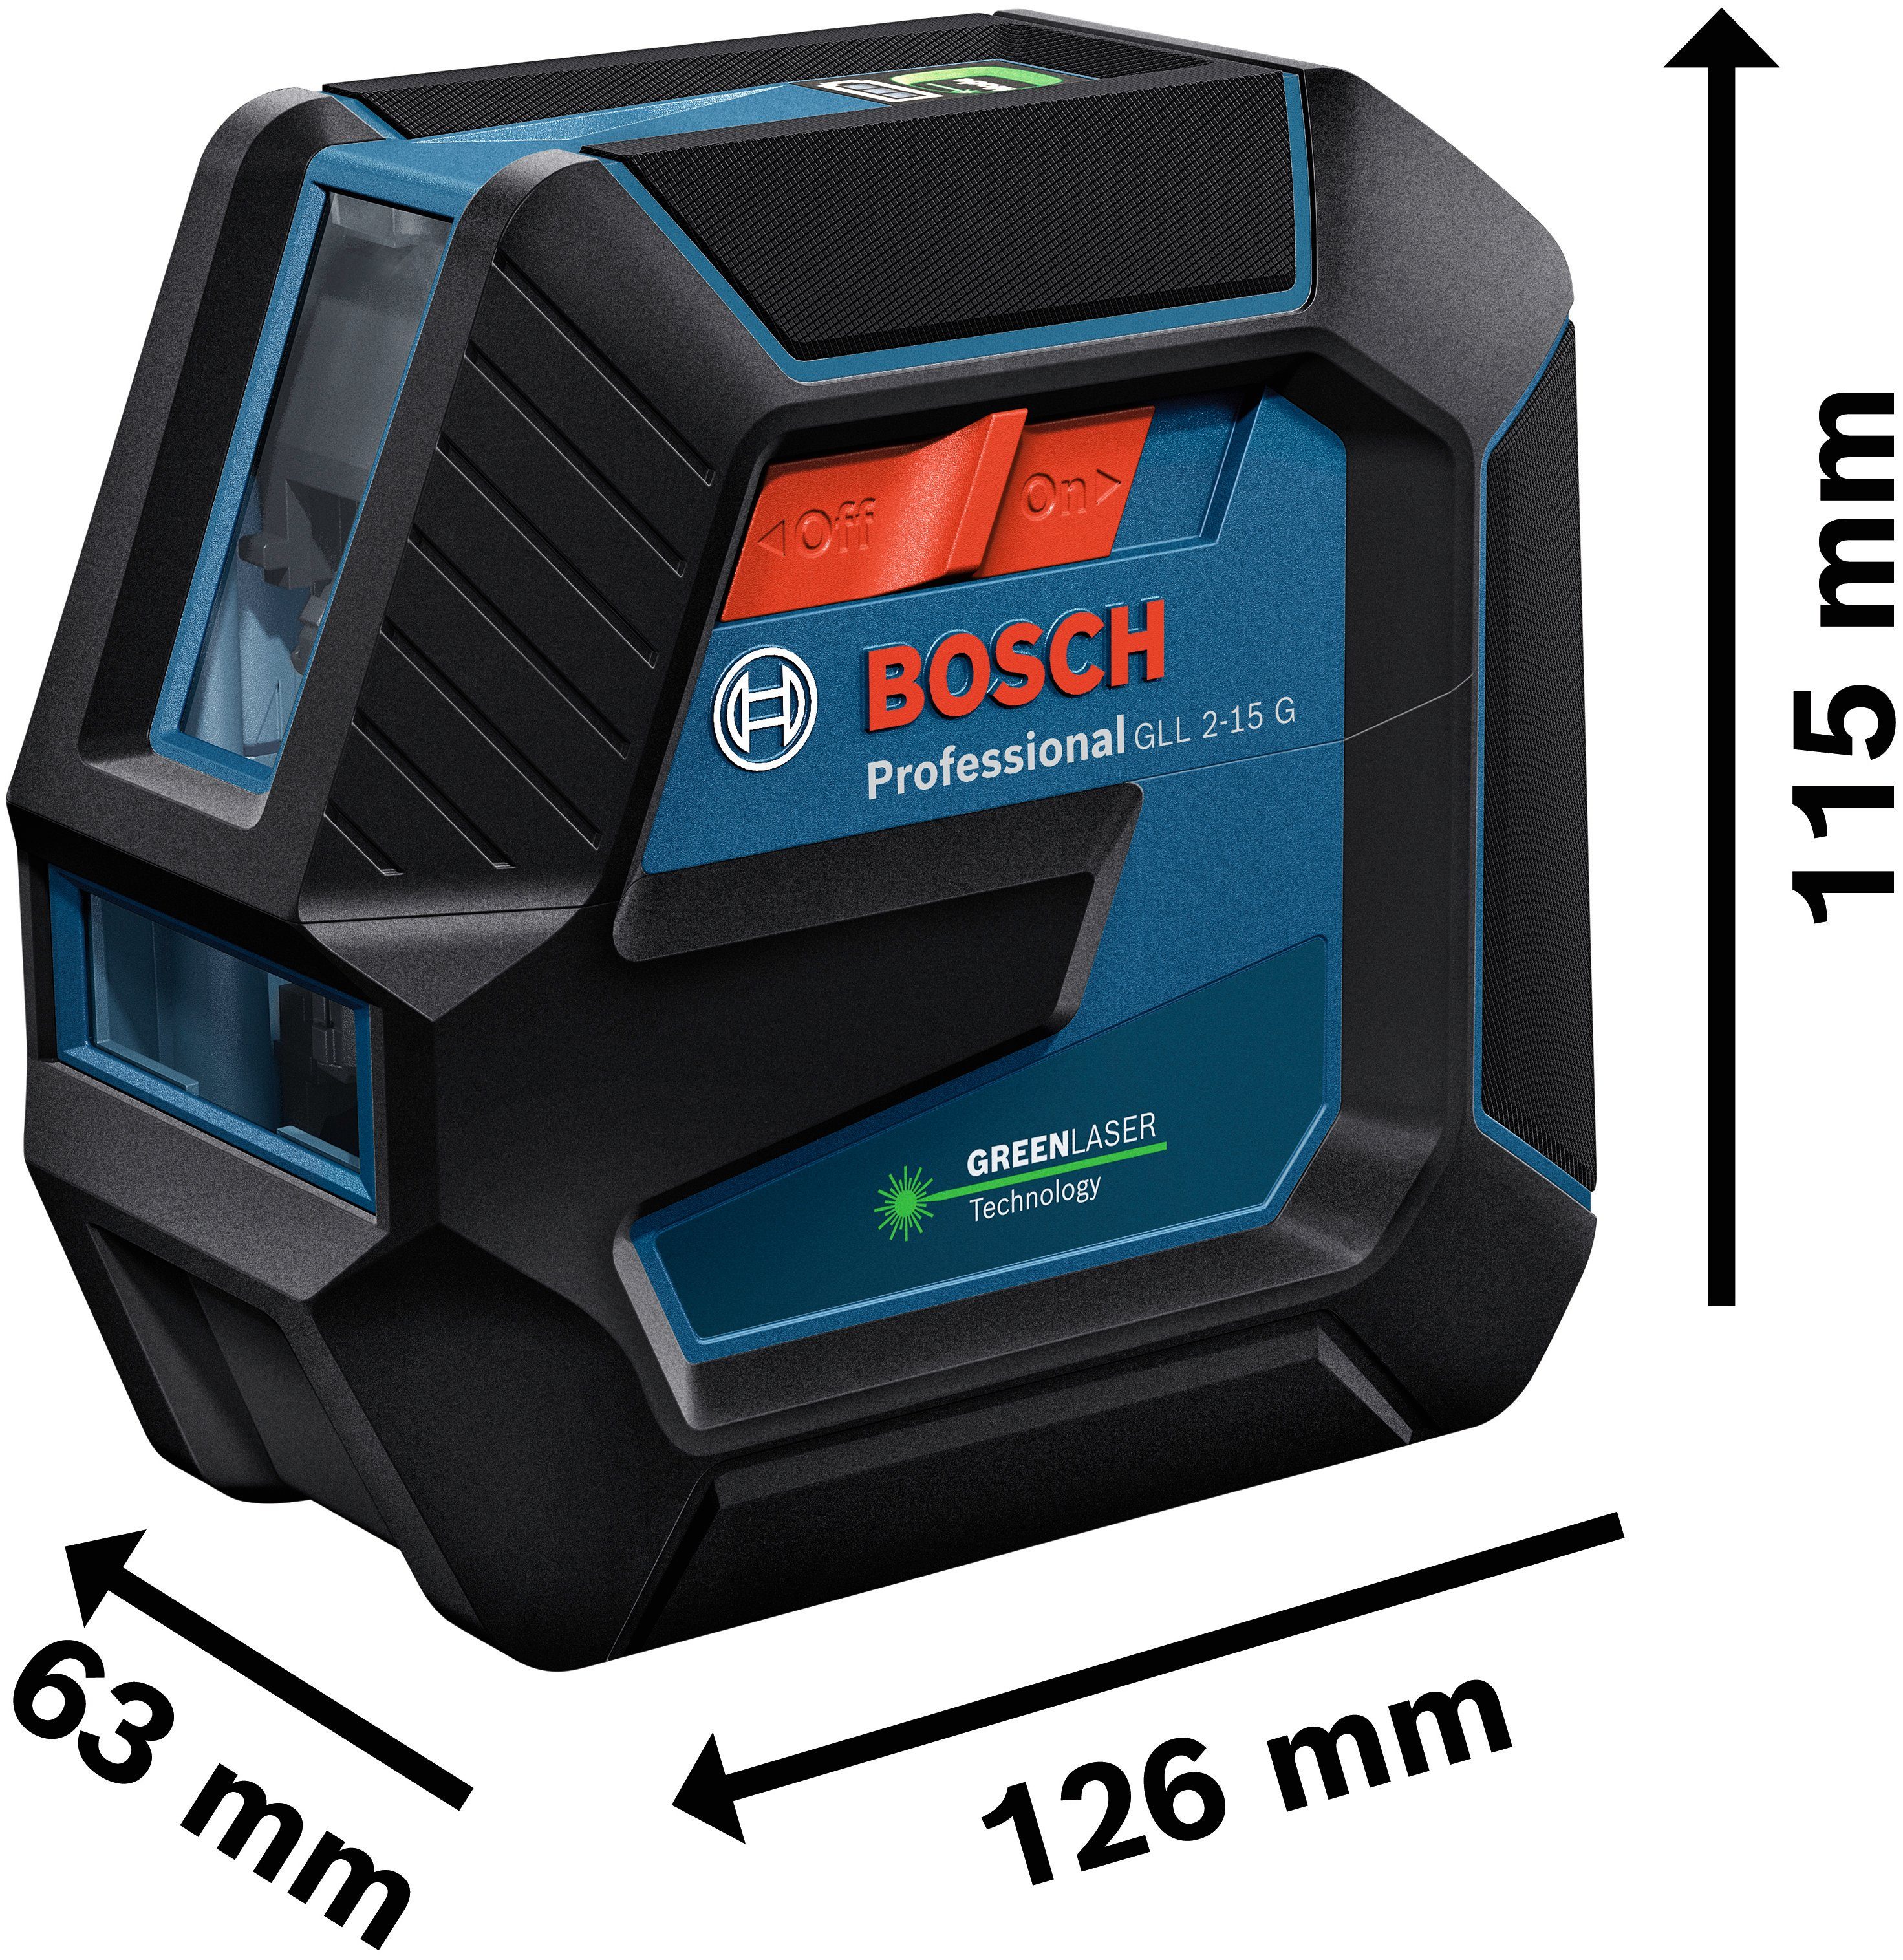 und Professional Bosch Linienlaser Spritzwasserschutz Handwerkerkoffer-Set, (Set), G 2-15 IP64 Professional GLL Staub-